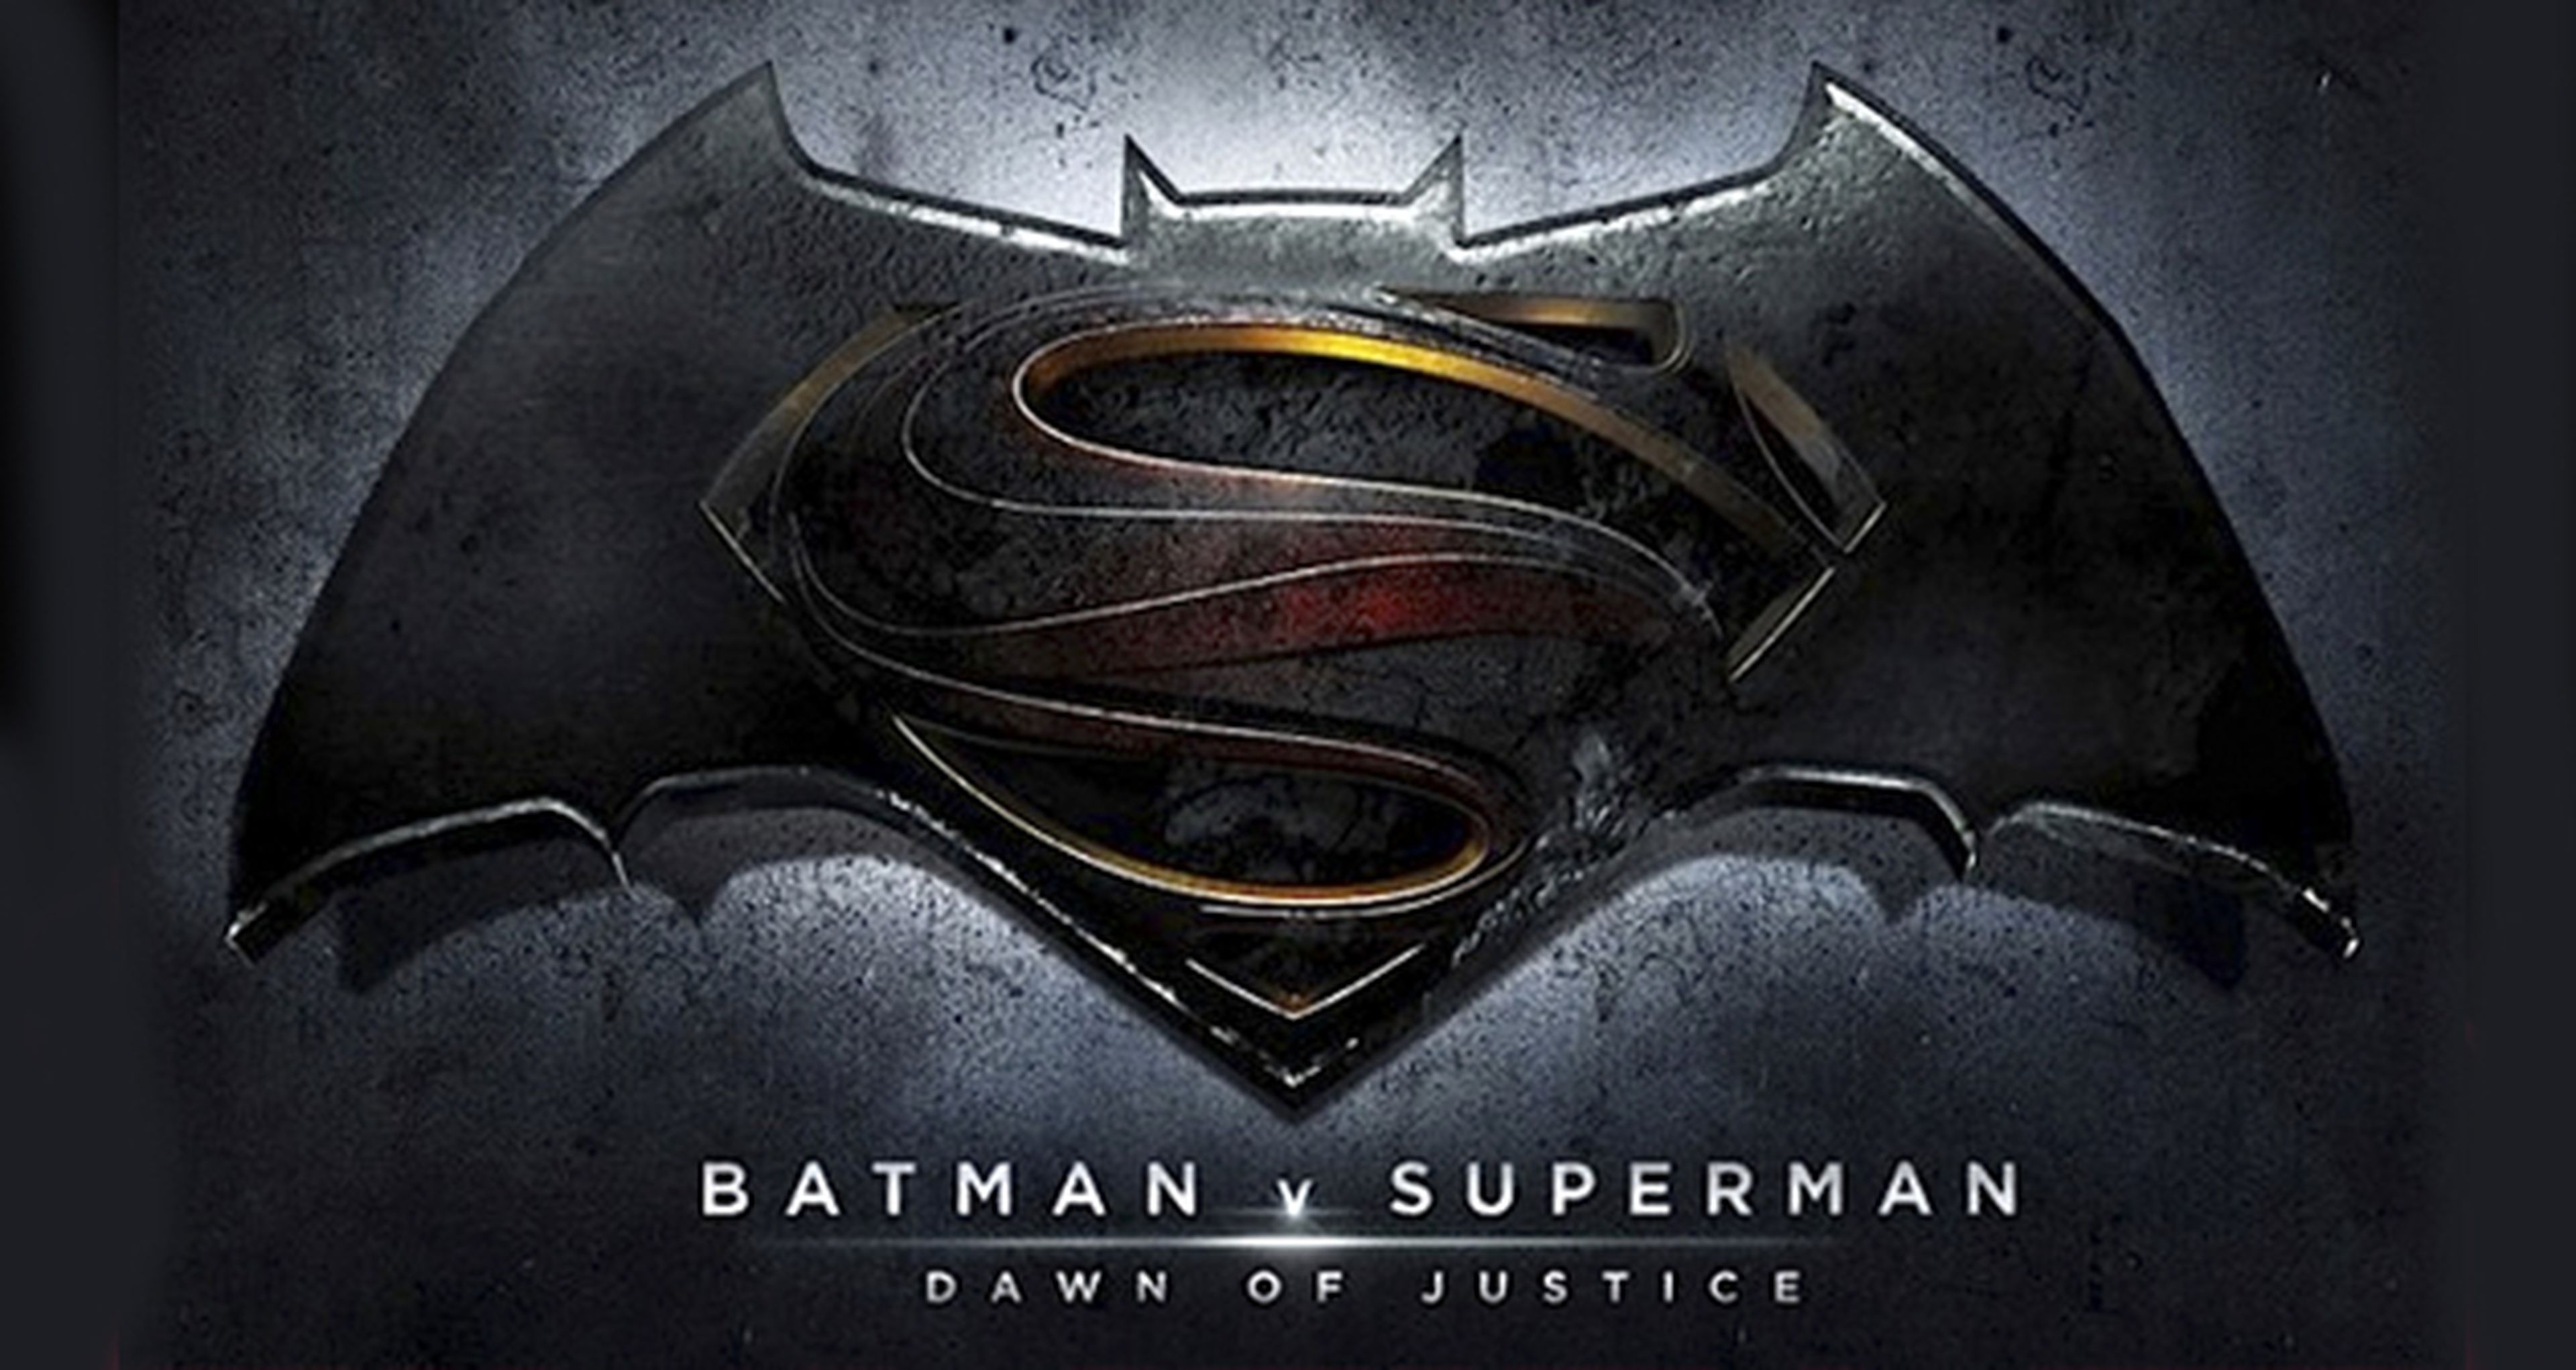 Batman v Superman lanza nuevos carteles promocionales